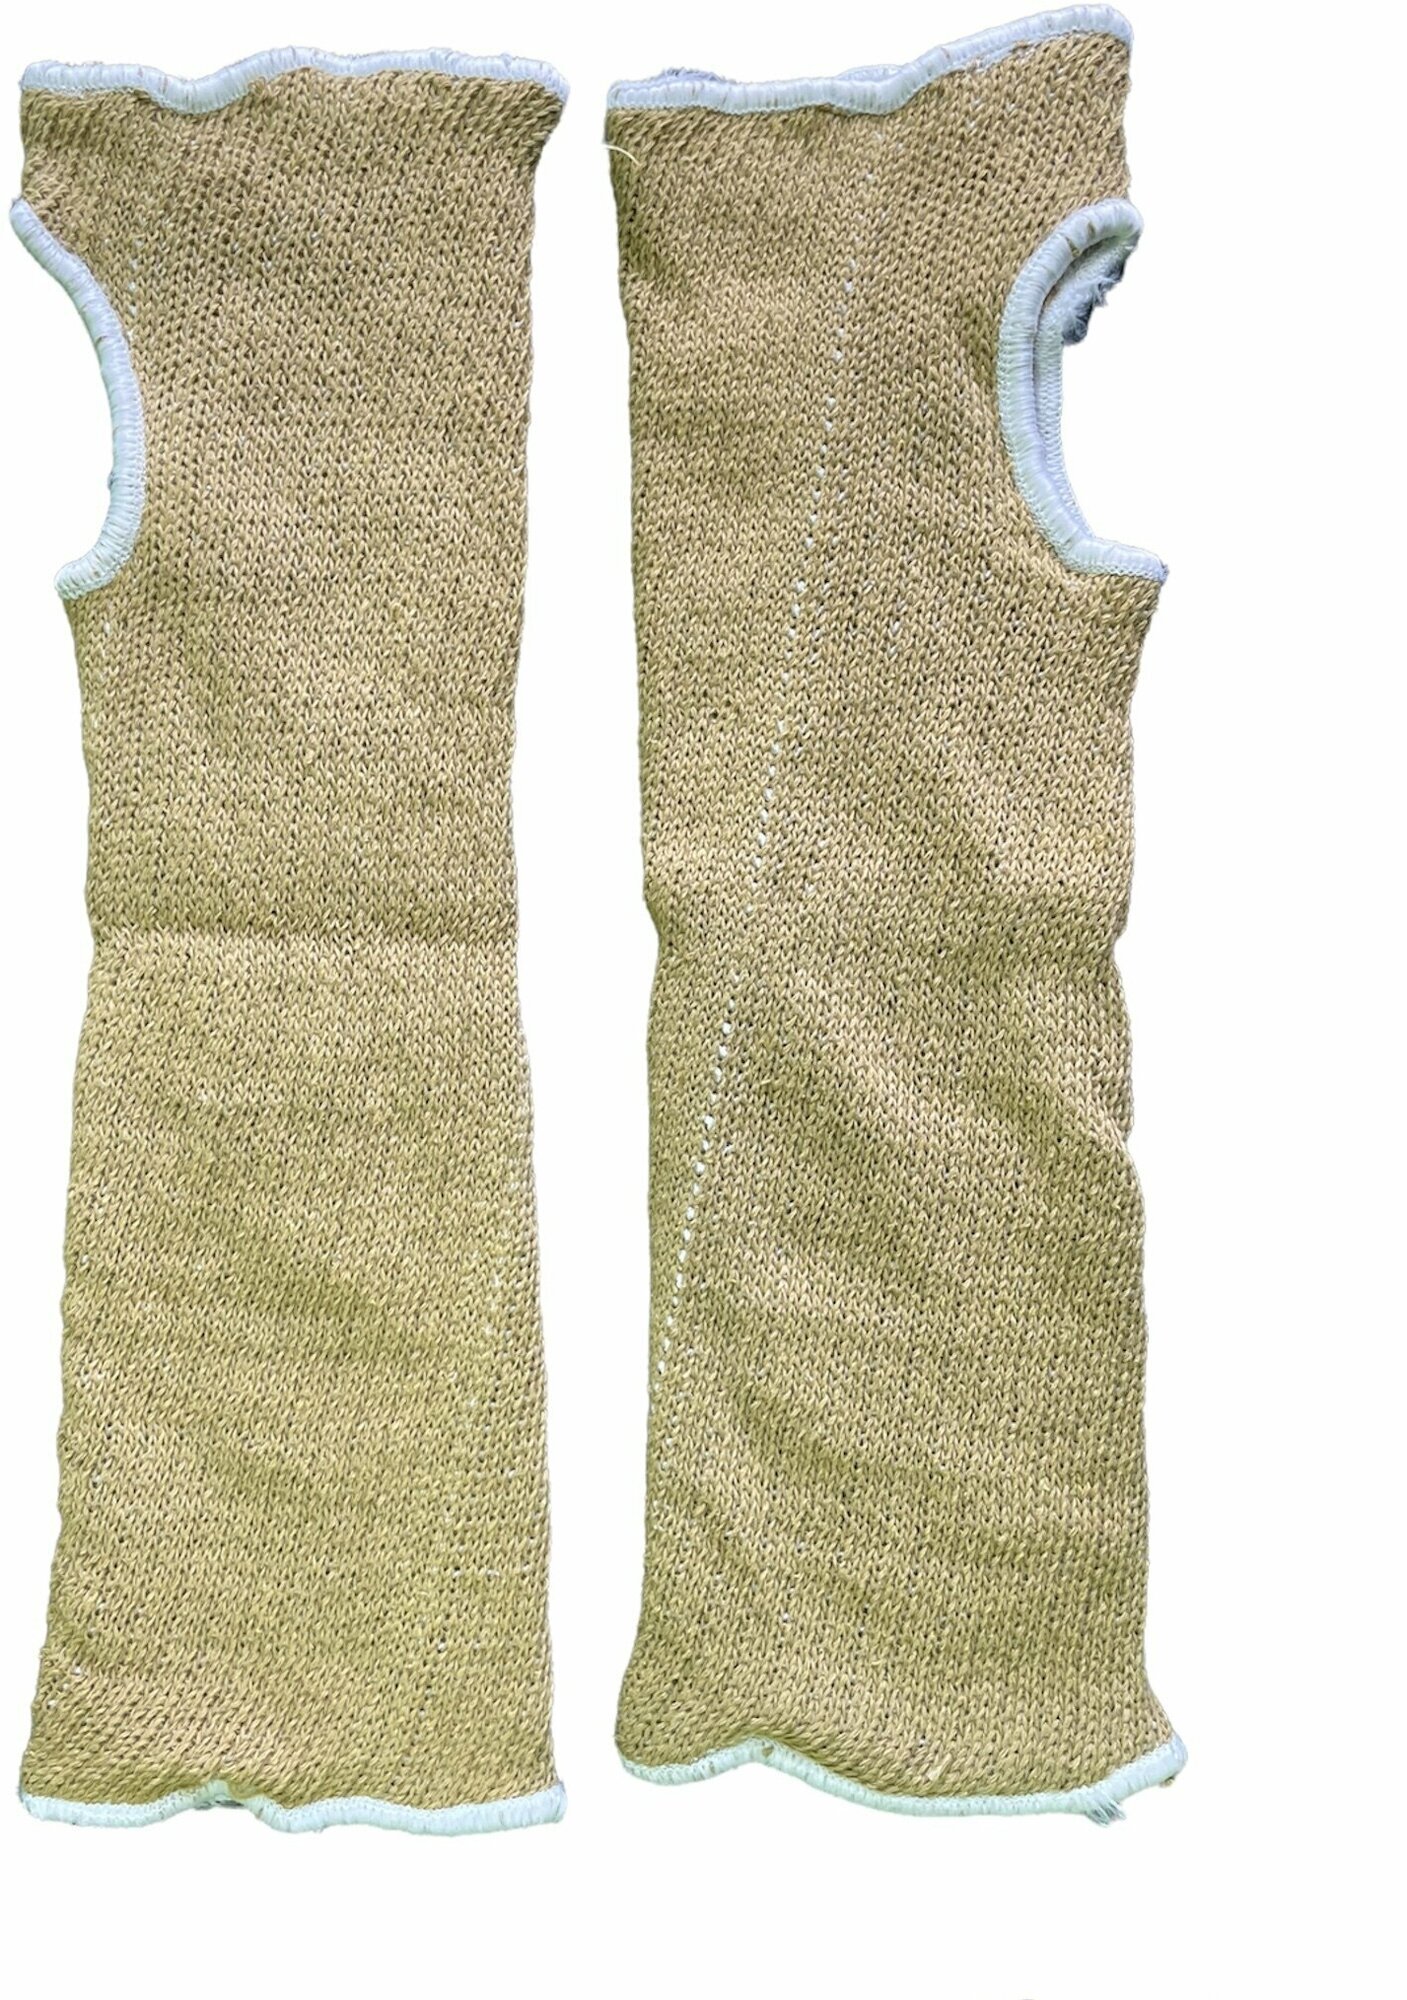 Кевларовые нарукавники HandSafe для защиты рук от порезов и высокой температуры - 1 пара - фотография № 7